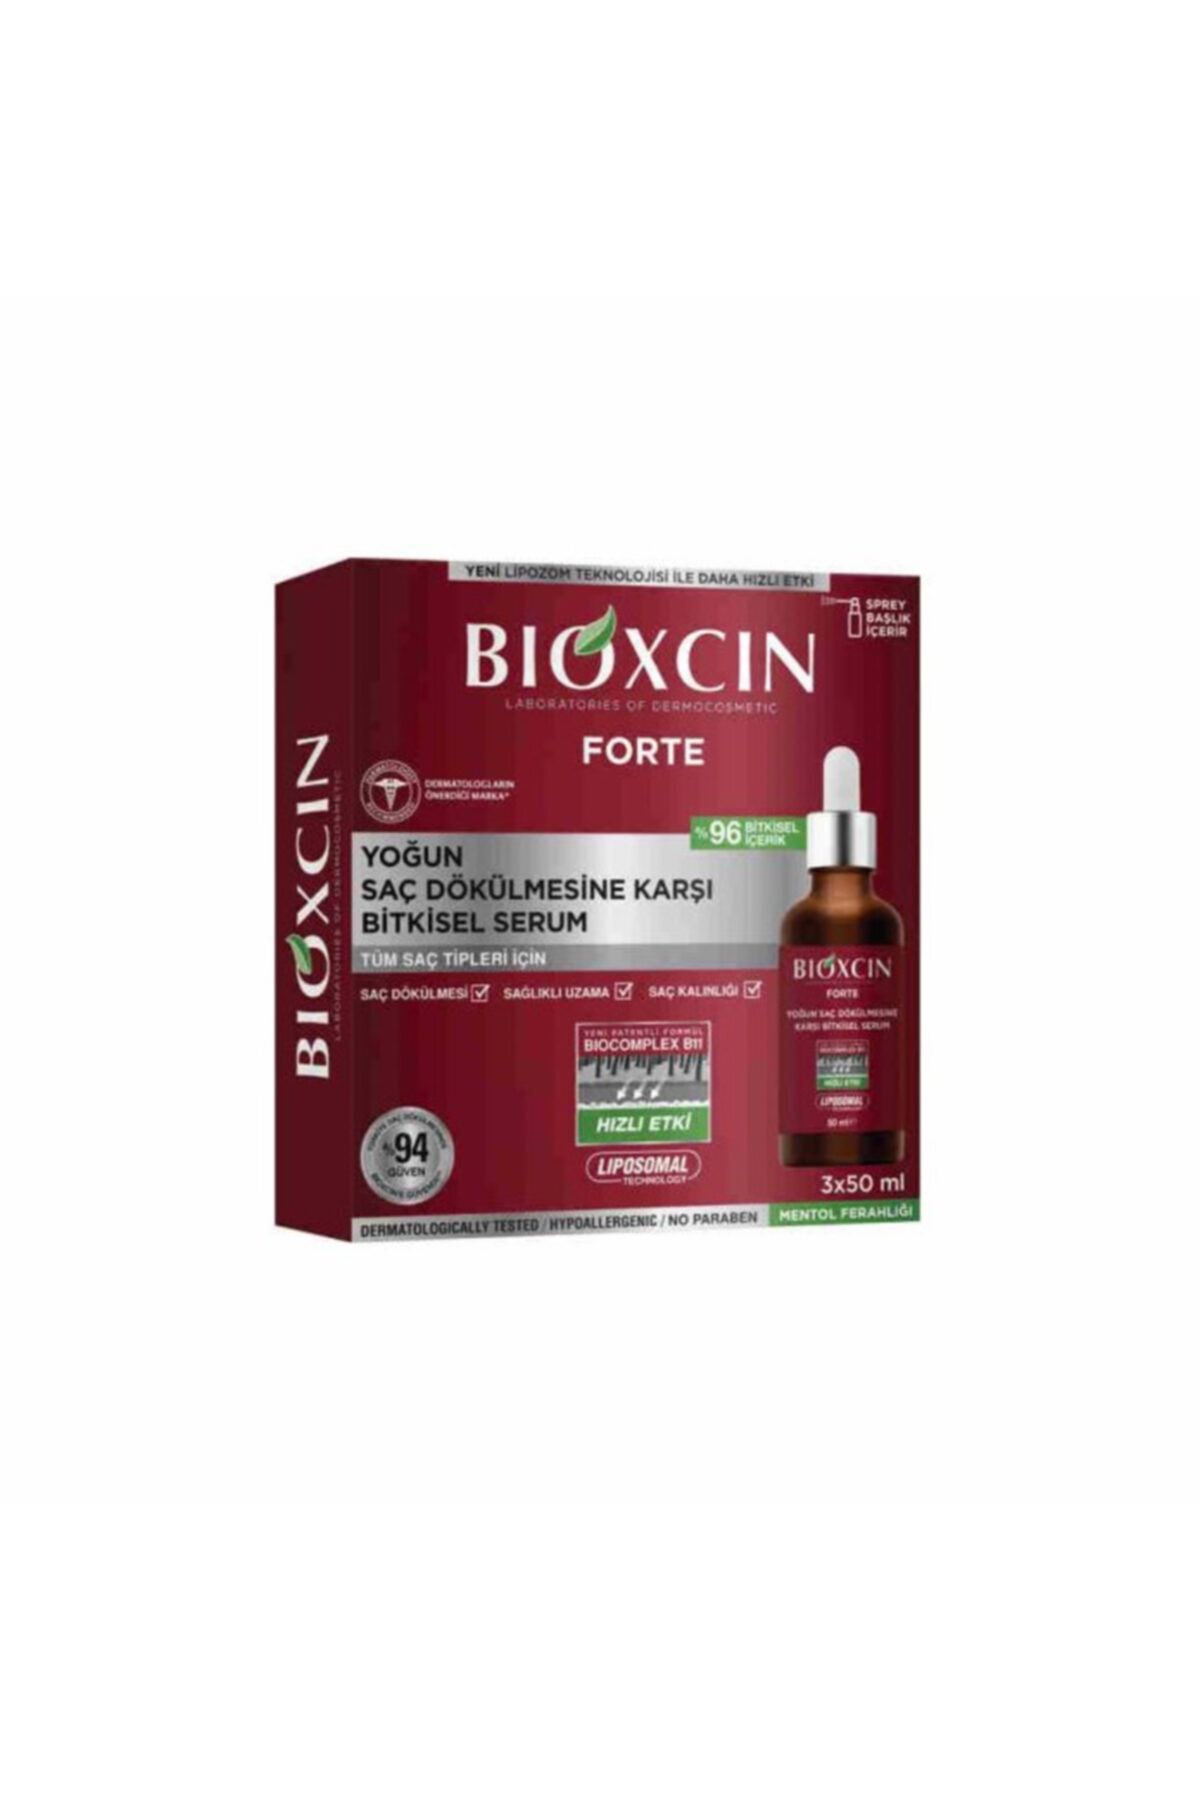 Bioxcin Forte Yoğun Saç Dökülmesine Karşı Bitkisel Serum 3x50ml